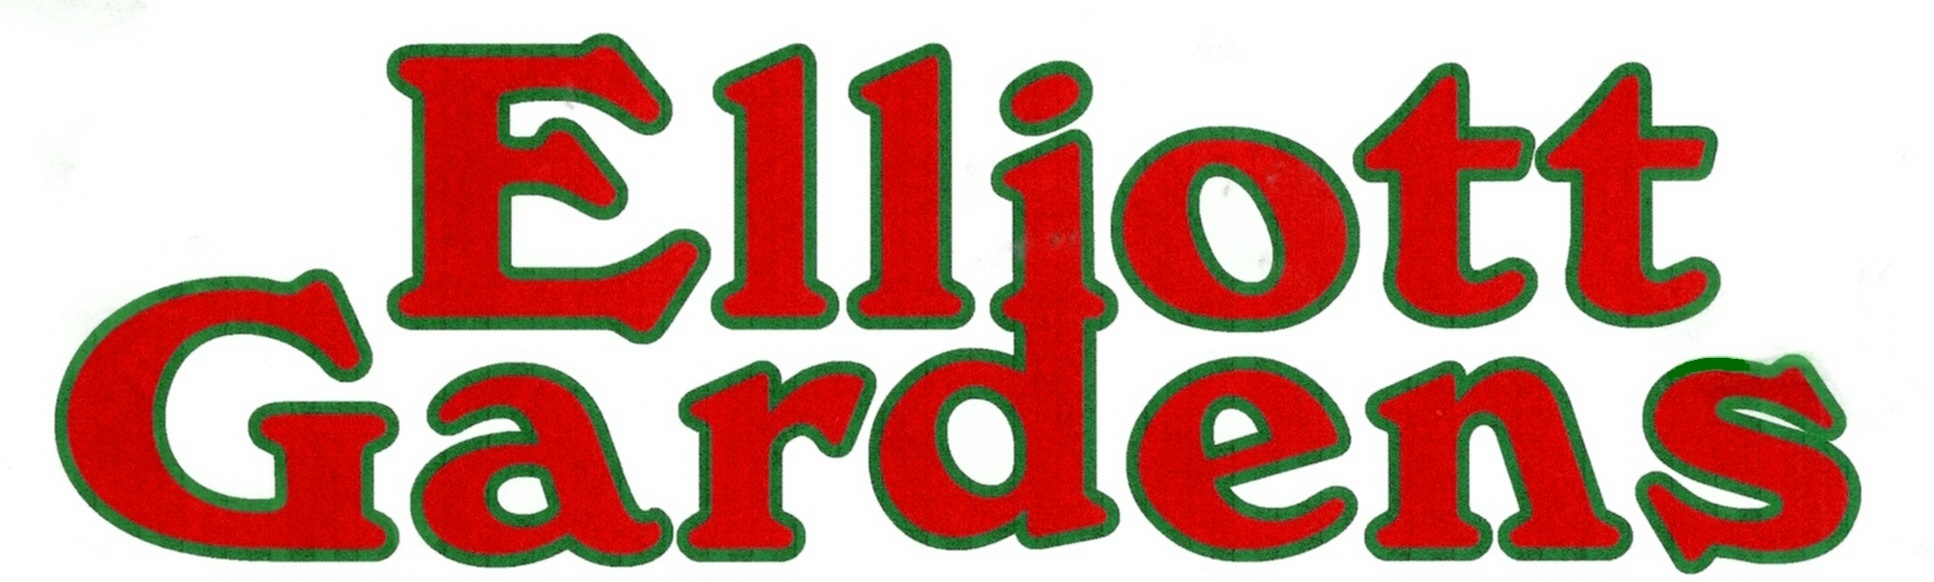 Company logo of Elliott Gardens